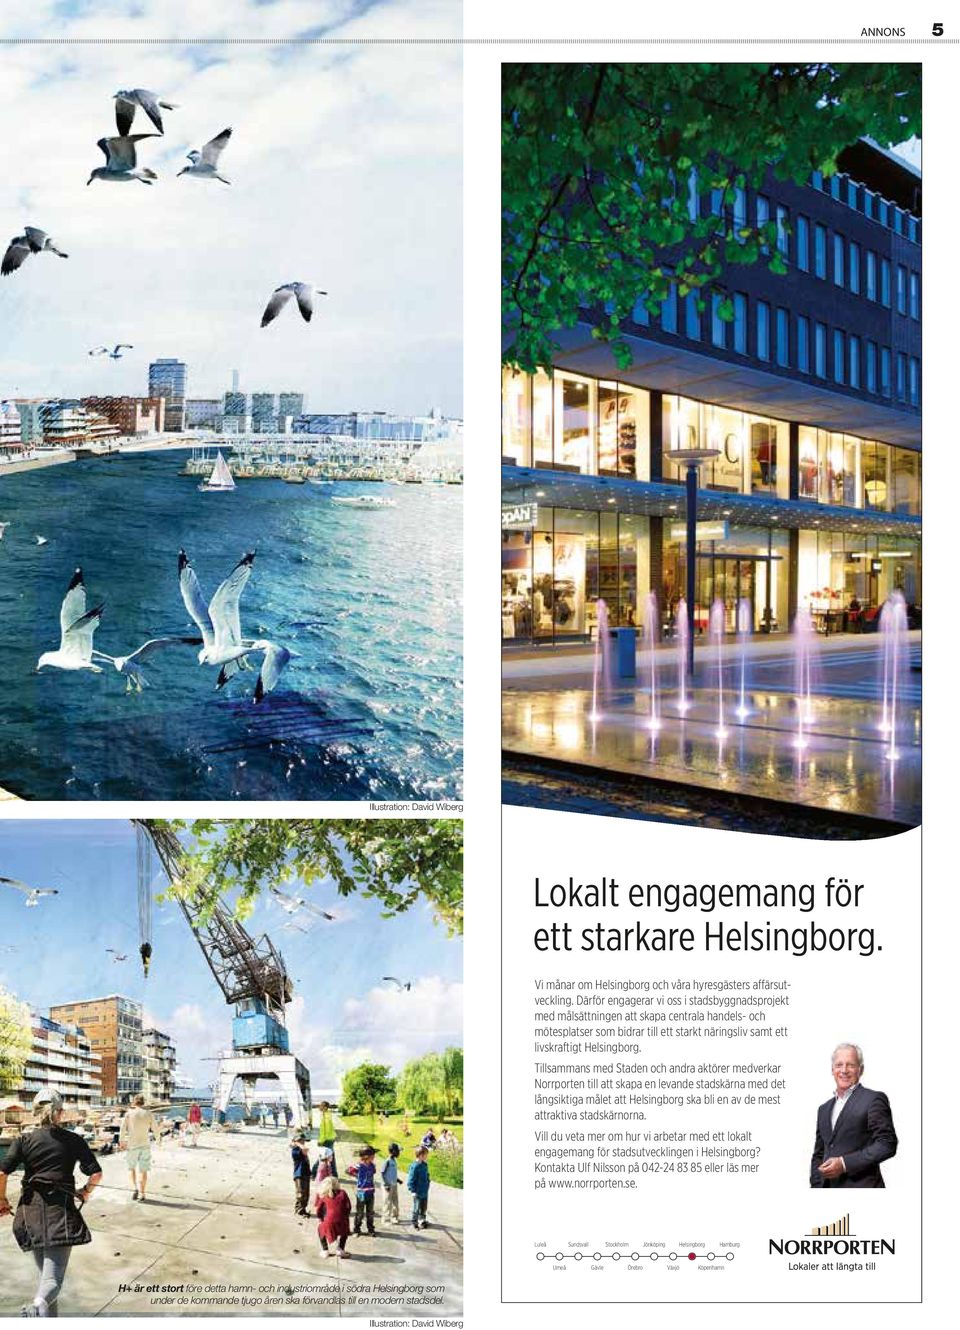 Tillsammans med Staden och andra aktörer medverkar Norrporten till att skapa en levande stadskärna med det långsiktiga målet att Helsingborg ska bli en av de mest attraktiva stadskärnorna.